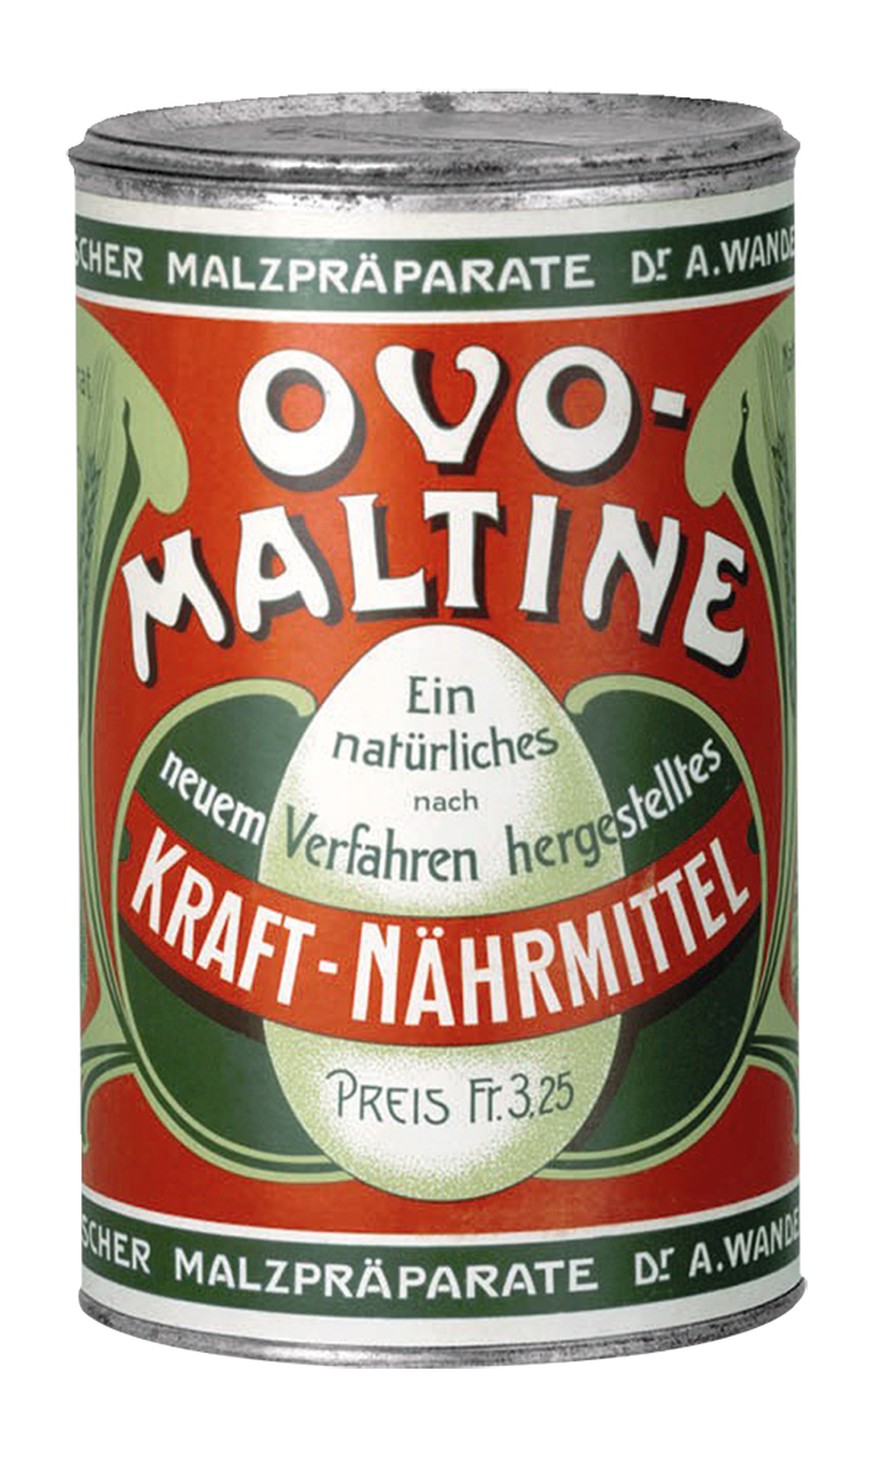 Die erste Ovomaltine-Dose von 1904 war noch nicht im typischen Orange gestaltet.